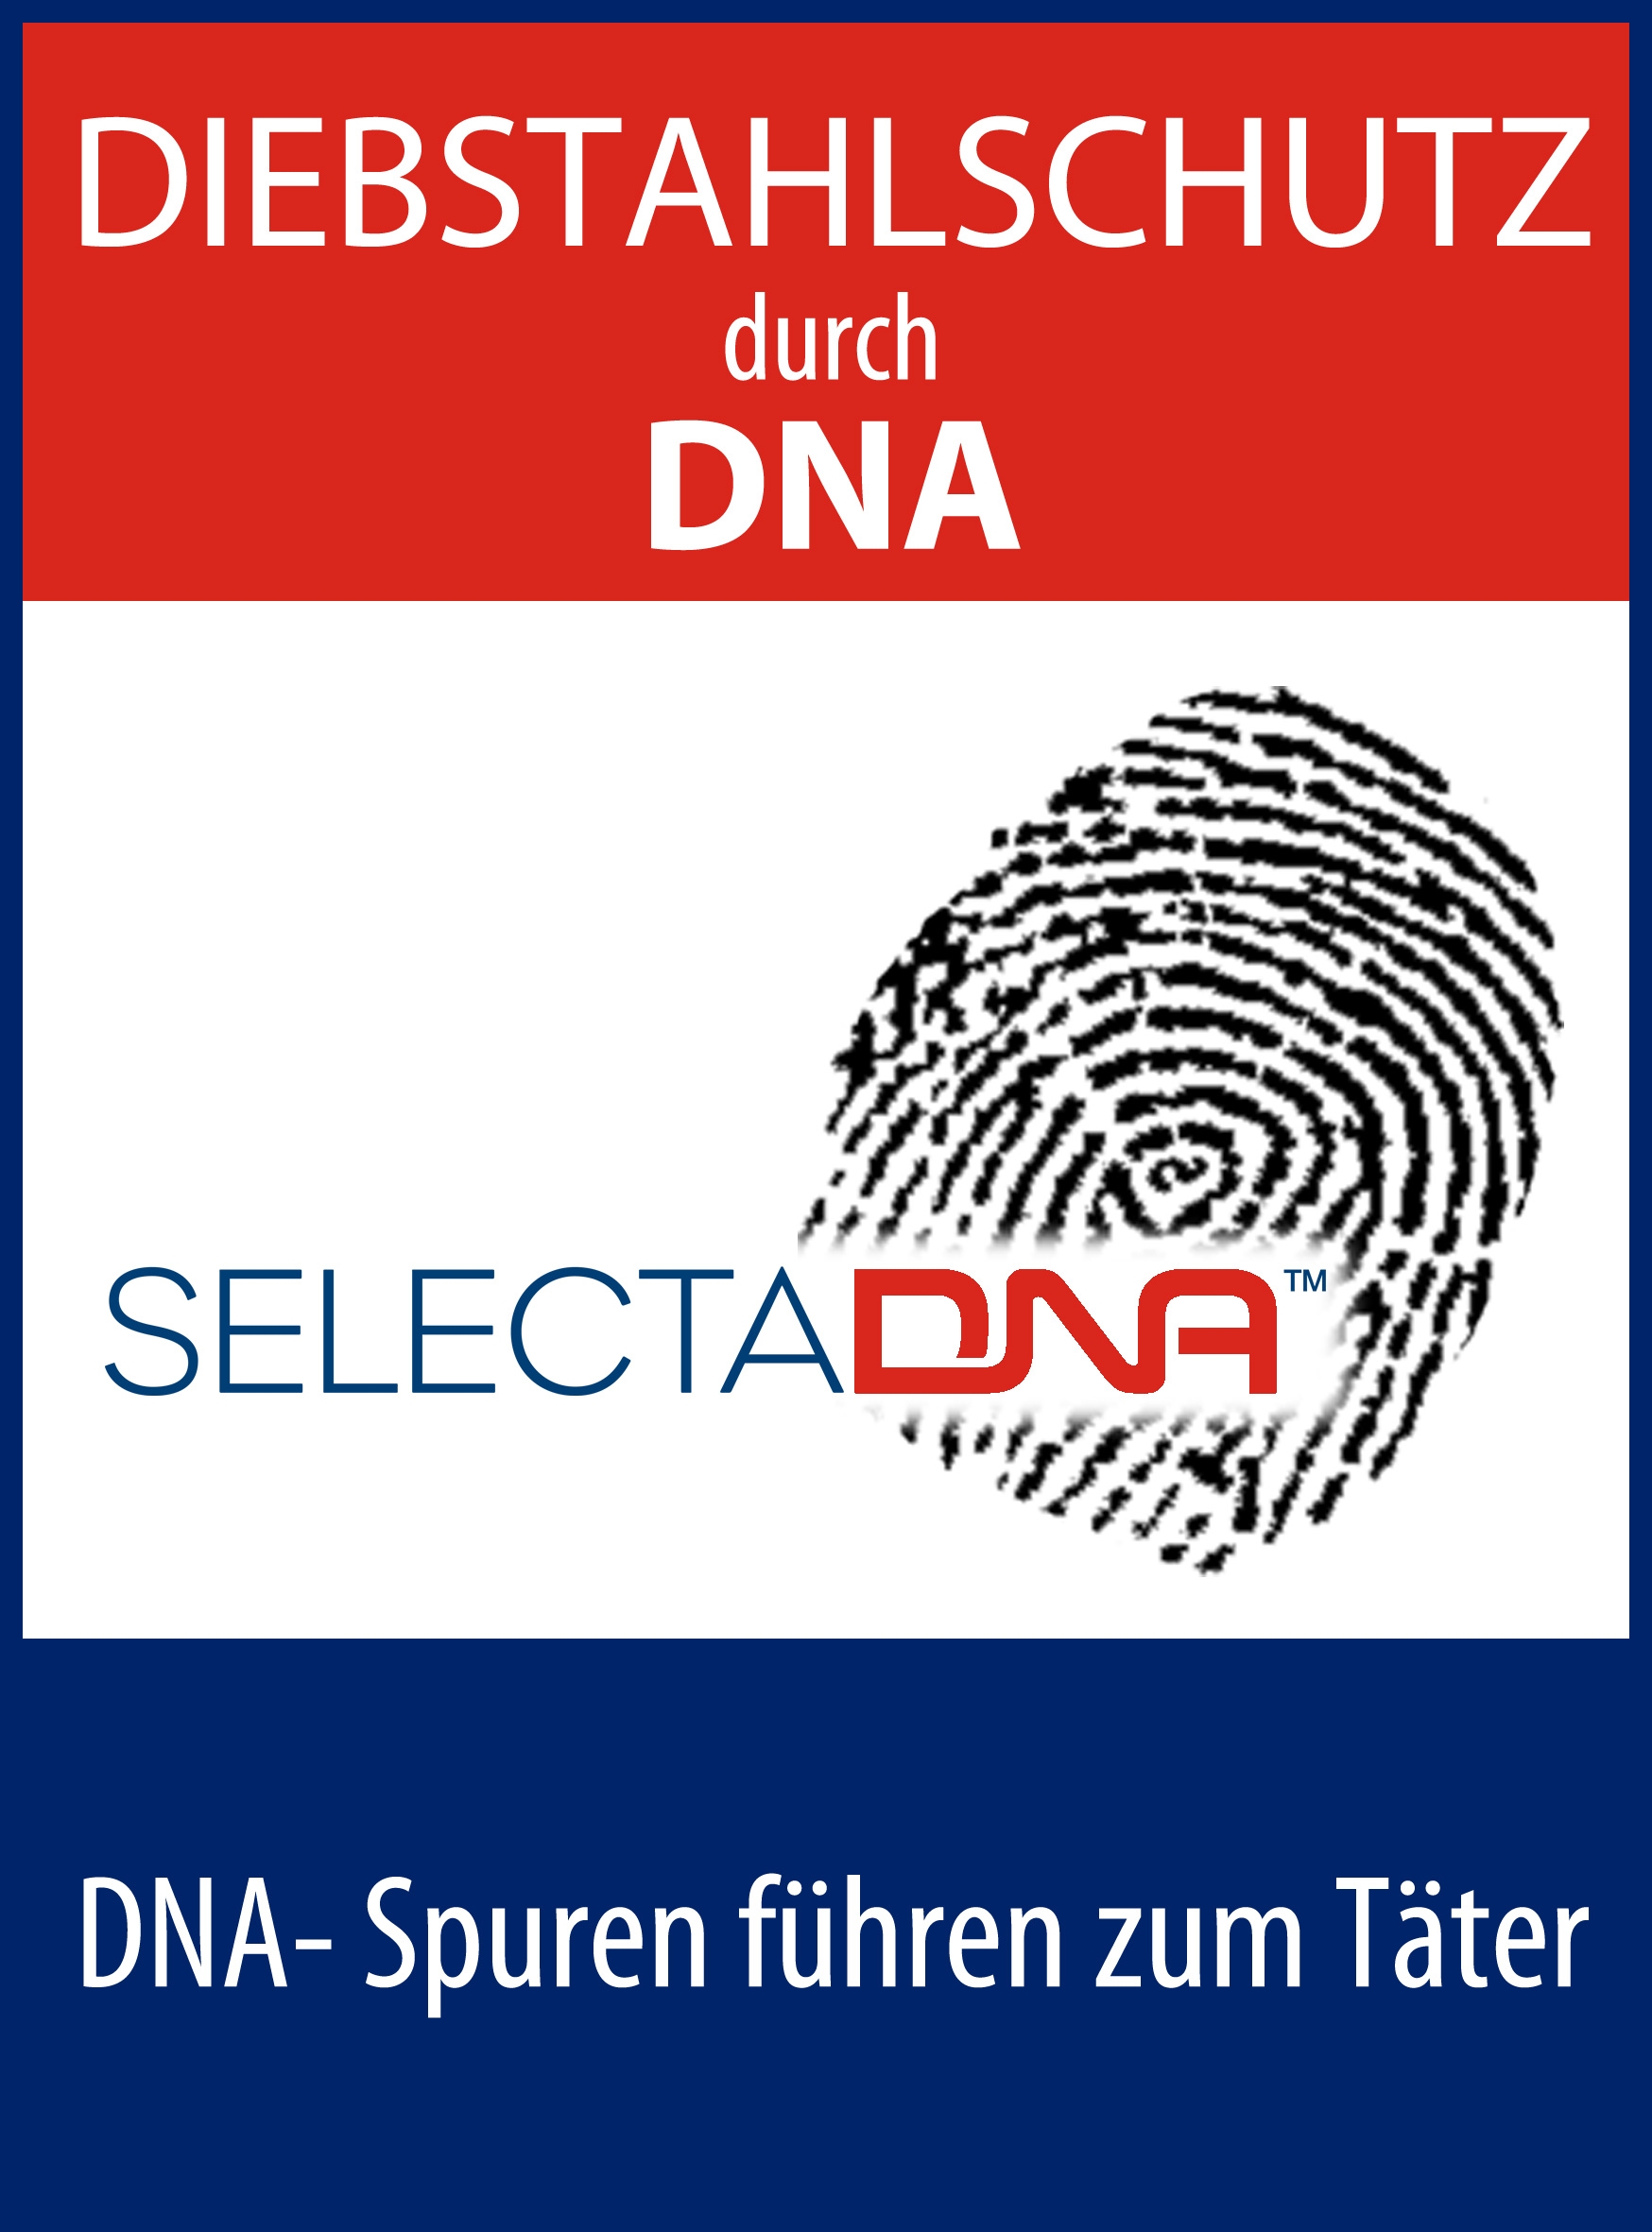 Künstliche DNA - Aufkleber Diebstahlschutz (doppelseitig bedruckt) 150 x  210 mm für Eingangstüre